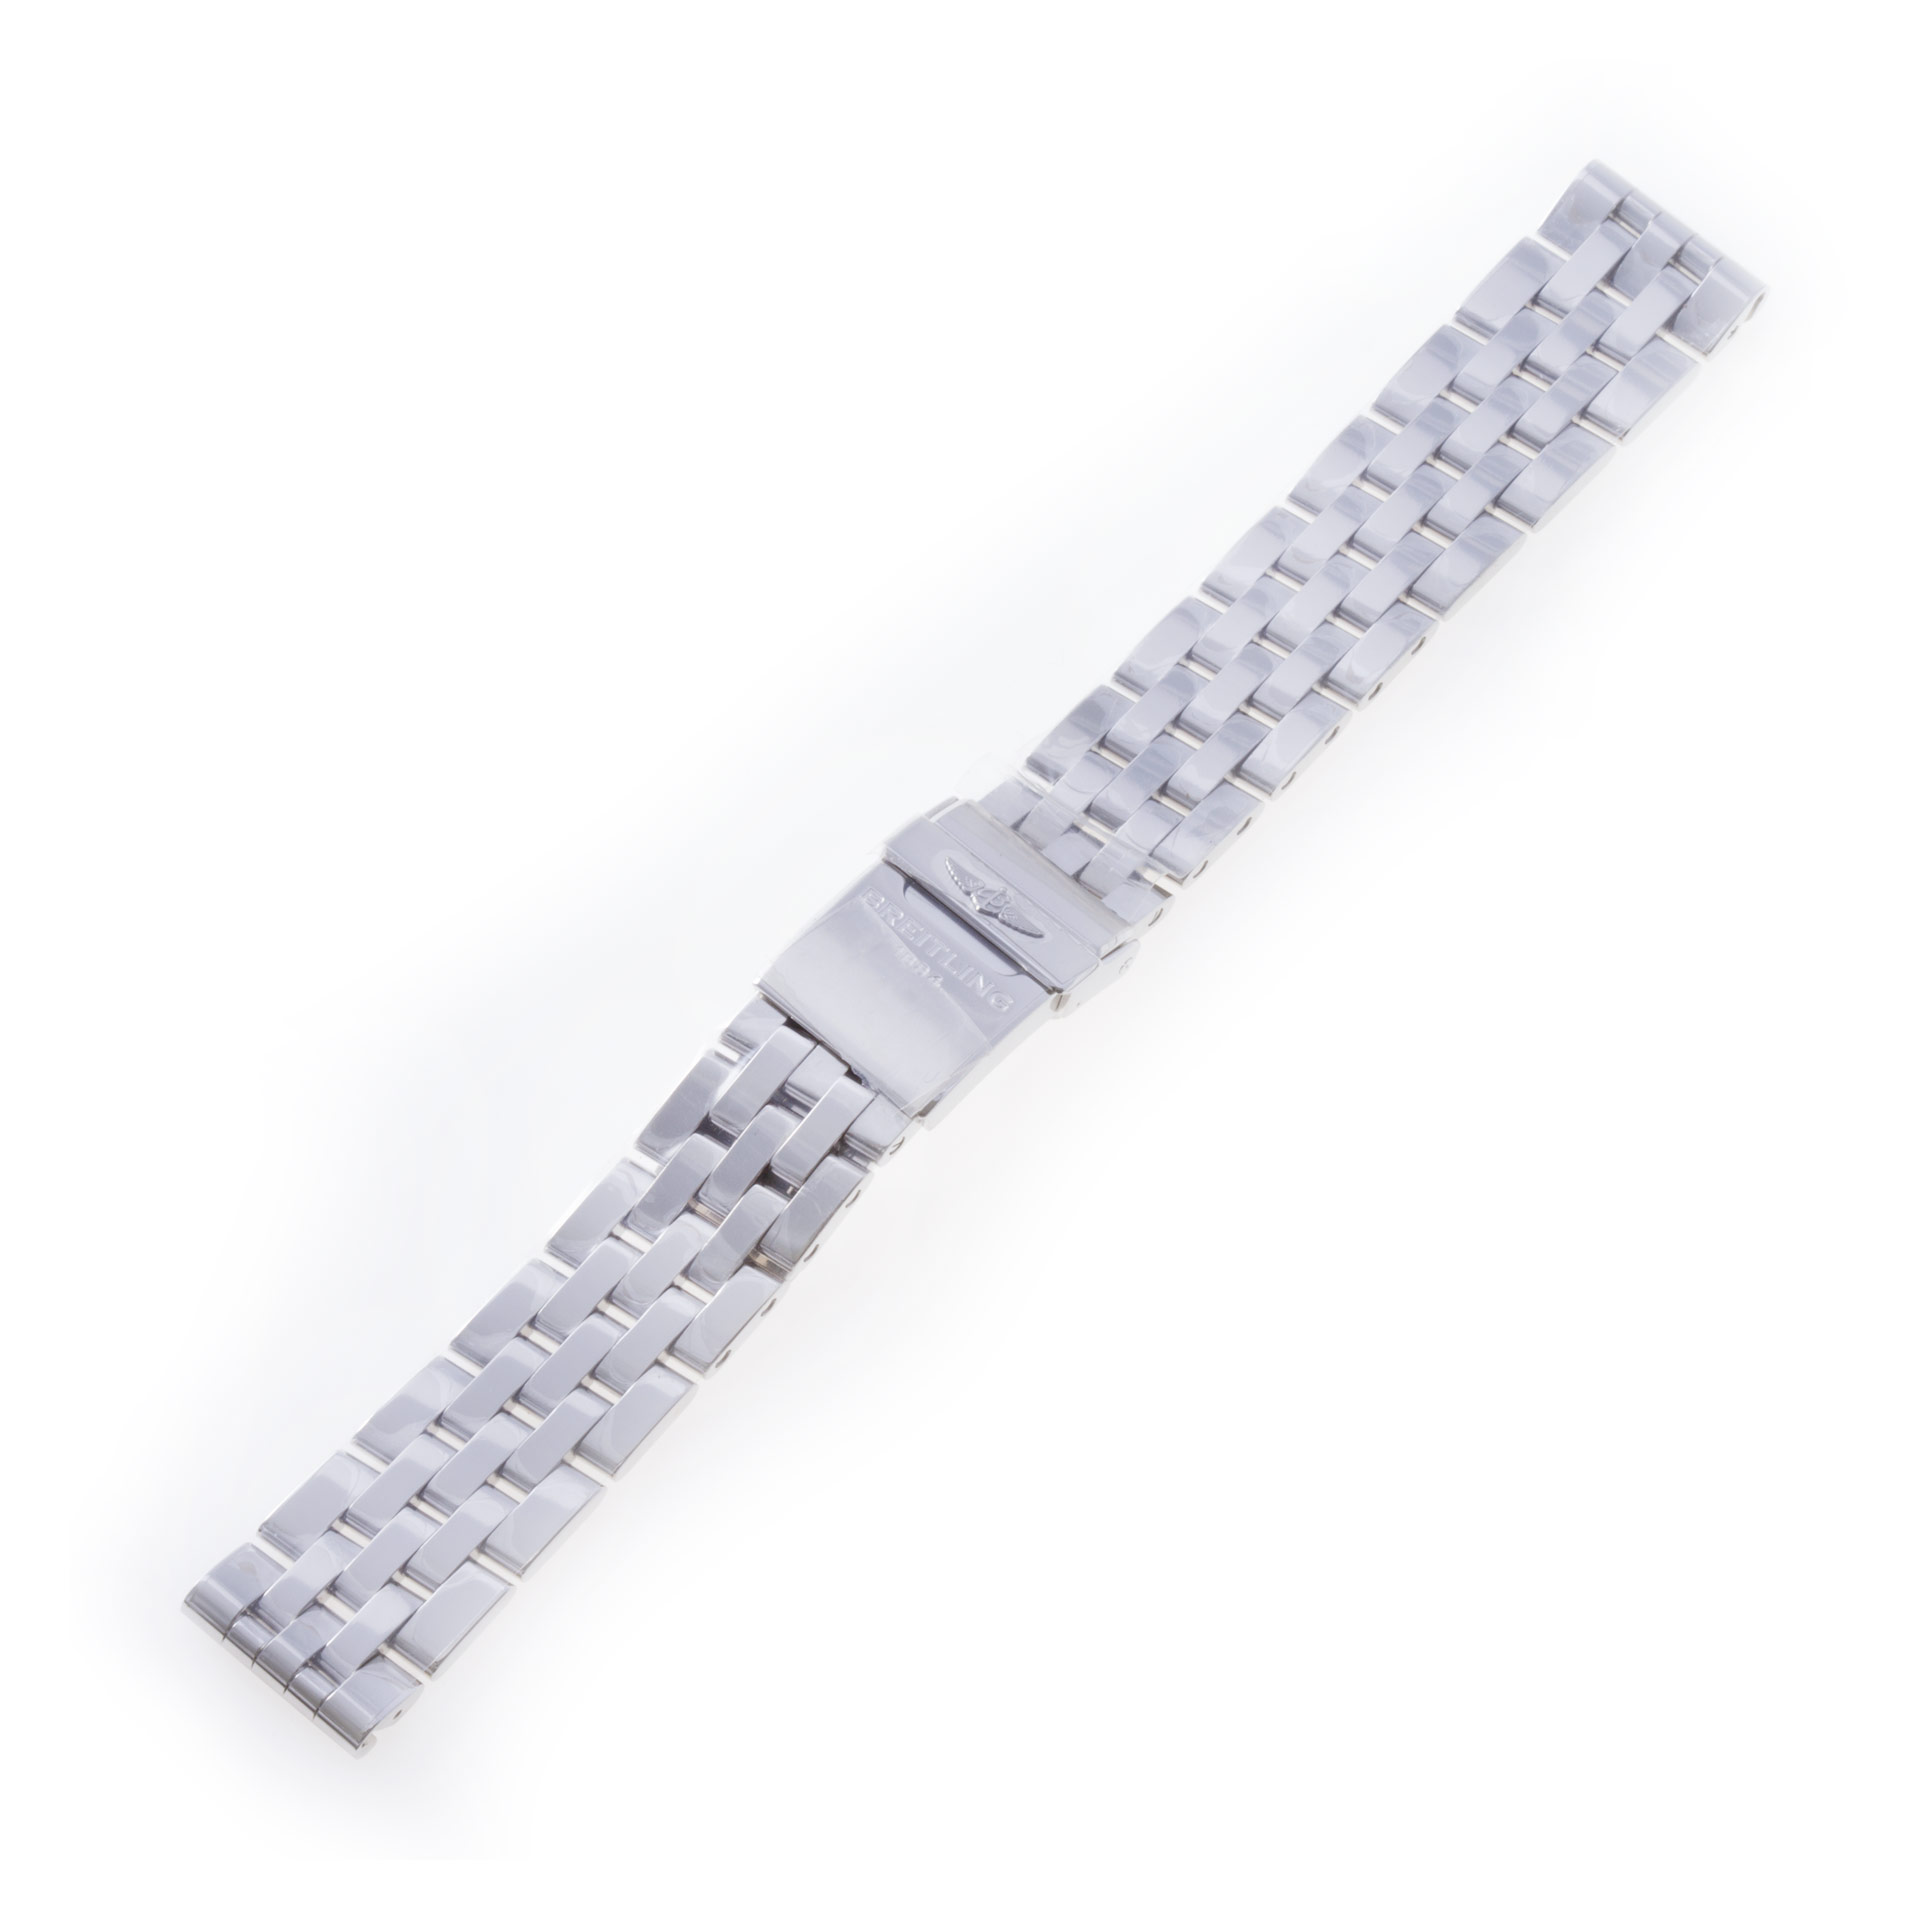 Breitling 20mm Pilot bracelet in stainless steel